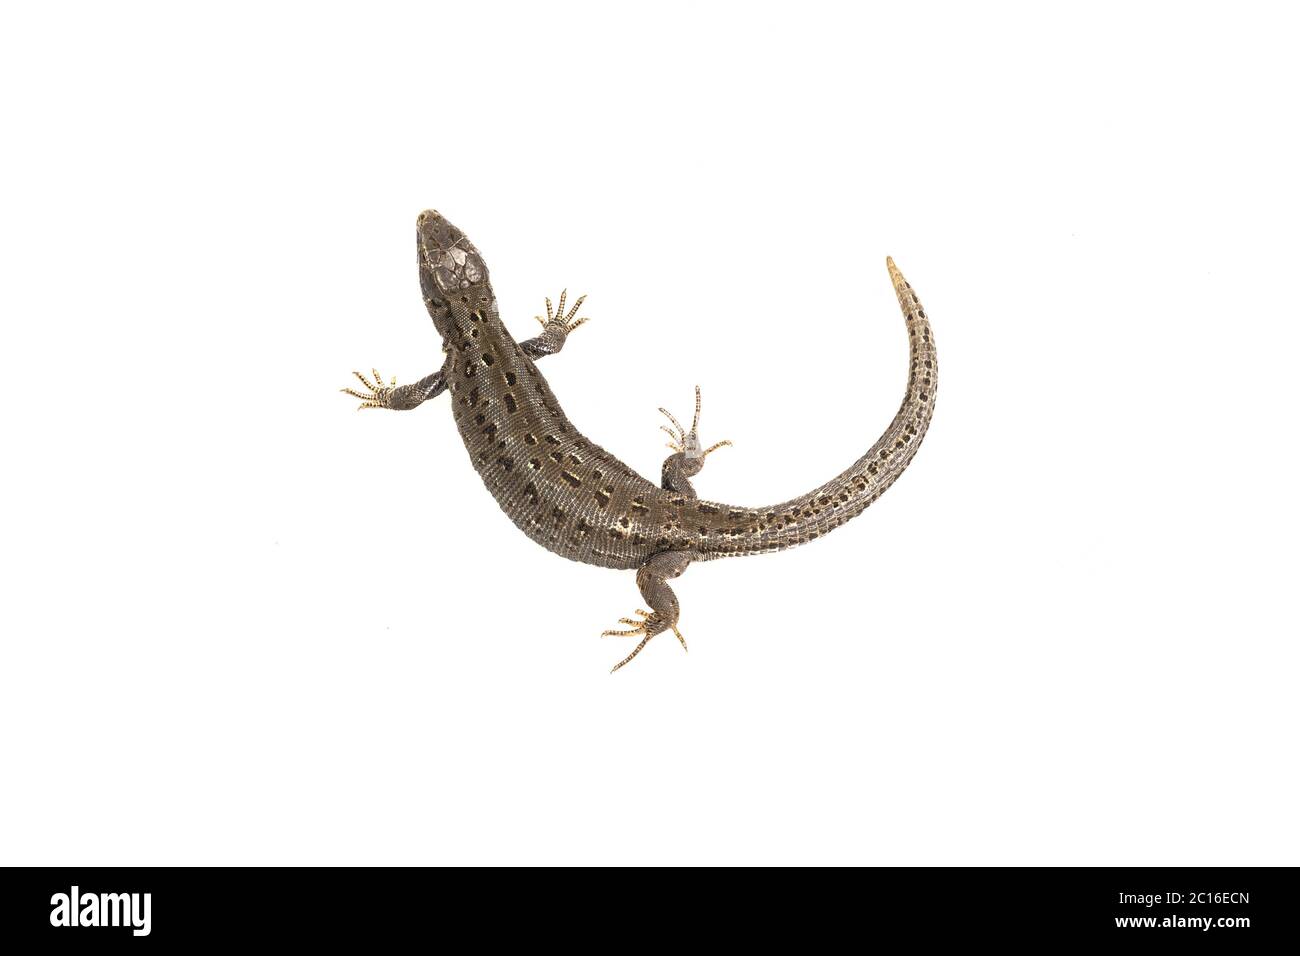 Lizard (Lacerta agilis) on a white background Stock Photo